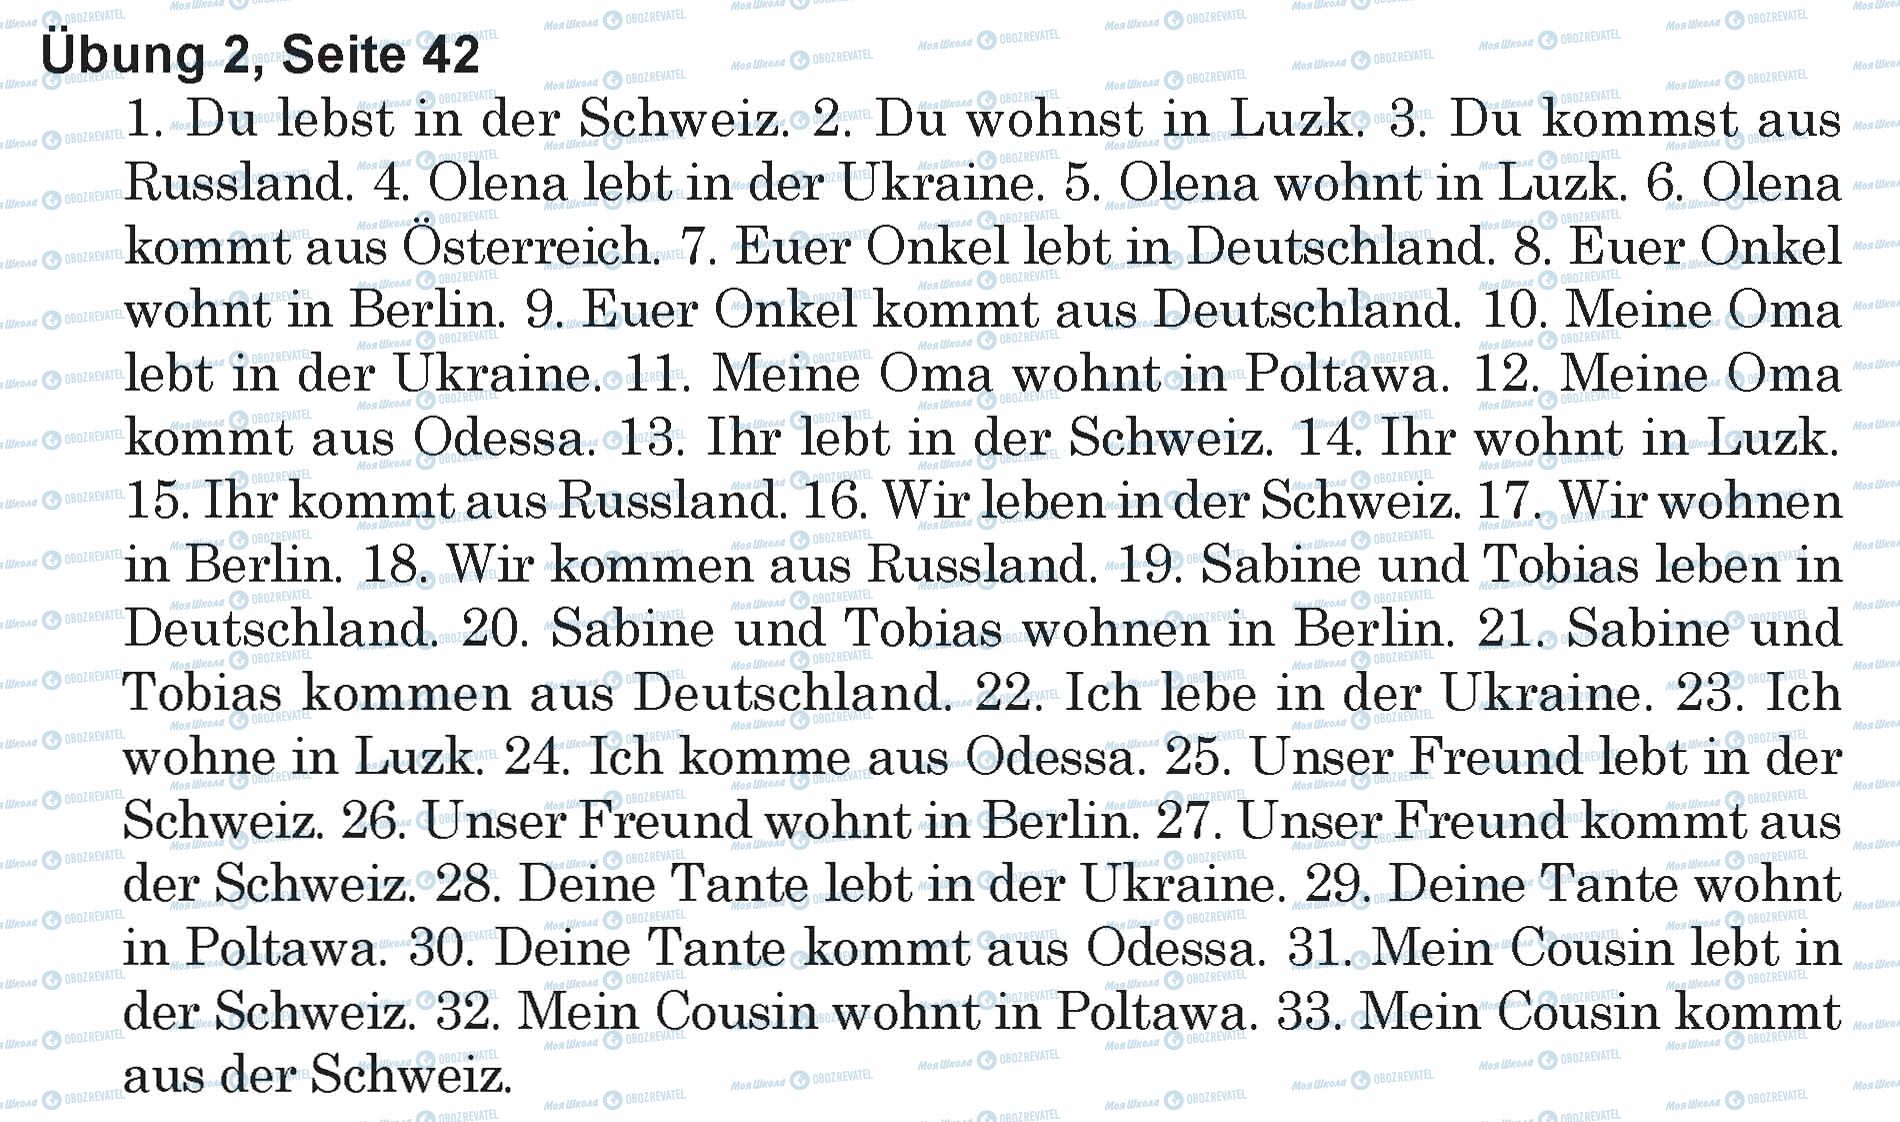 ГДЗ Немецкий язык 5 класс страница Ubung 2, Seite 42